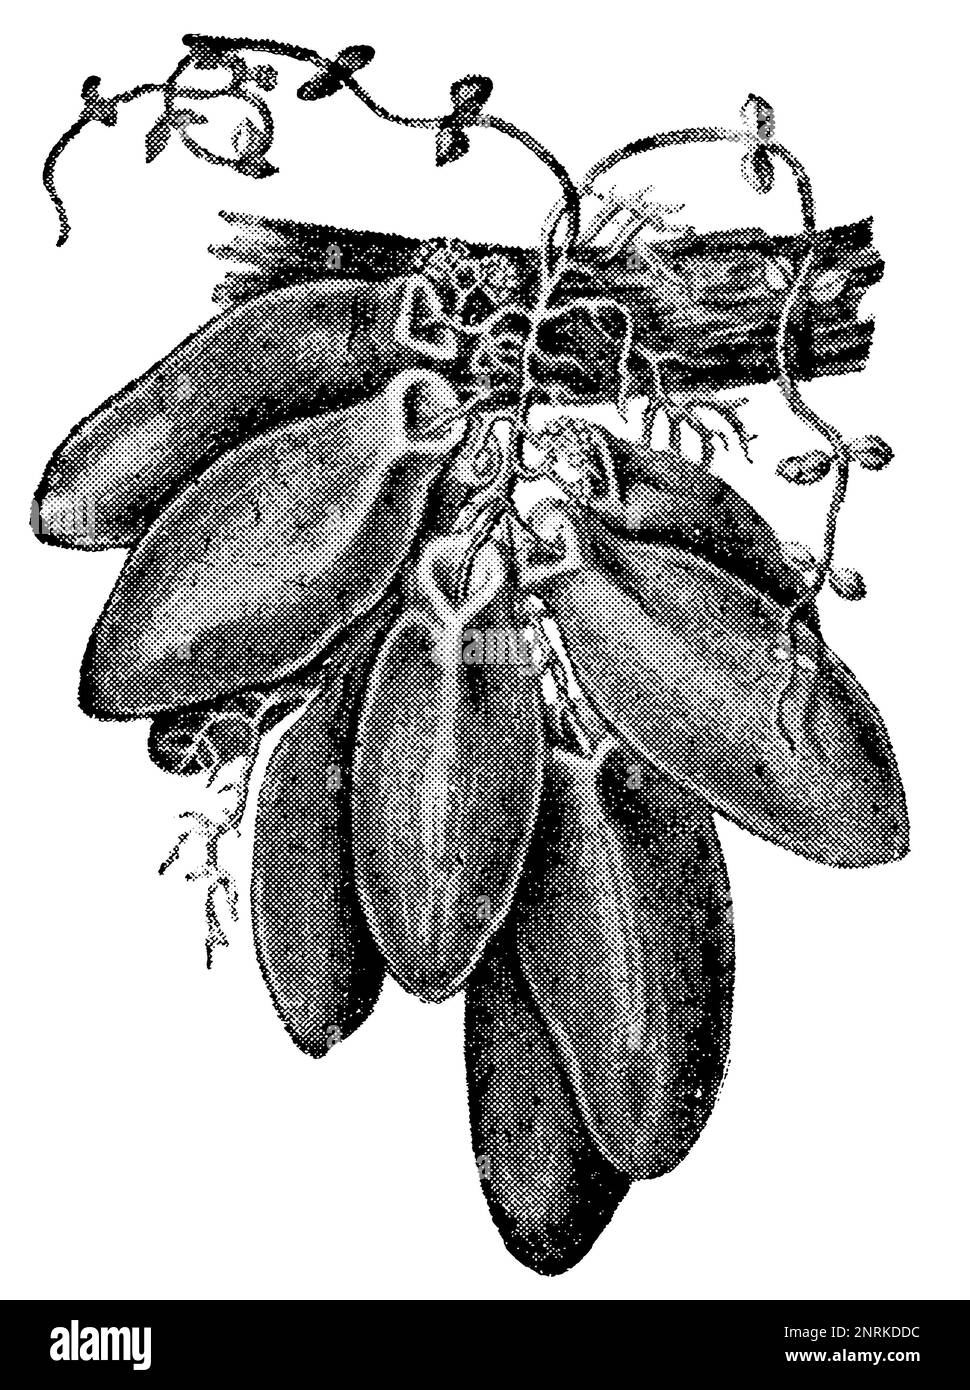 Une plante tropicale Dischidia Major. Publication du livre 'Meyers Konversations-Lexikon', Volume 2, Leipzig, Allemagne, 1910 Banque D'Images